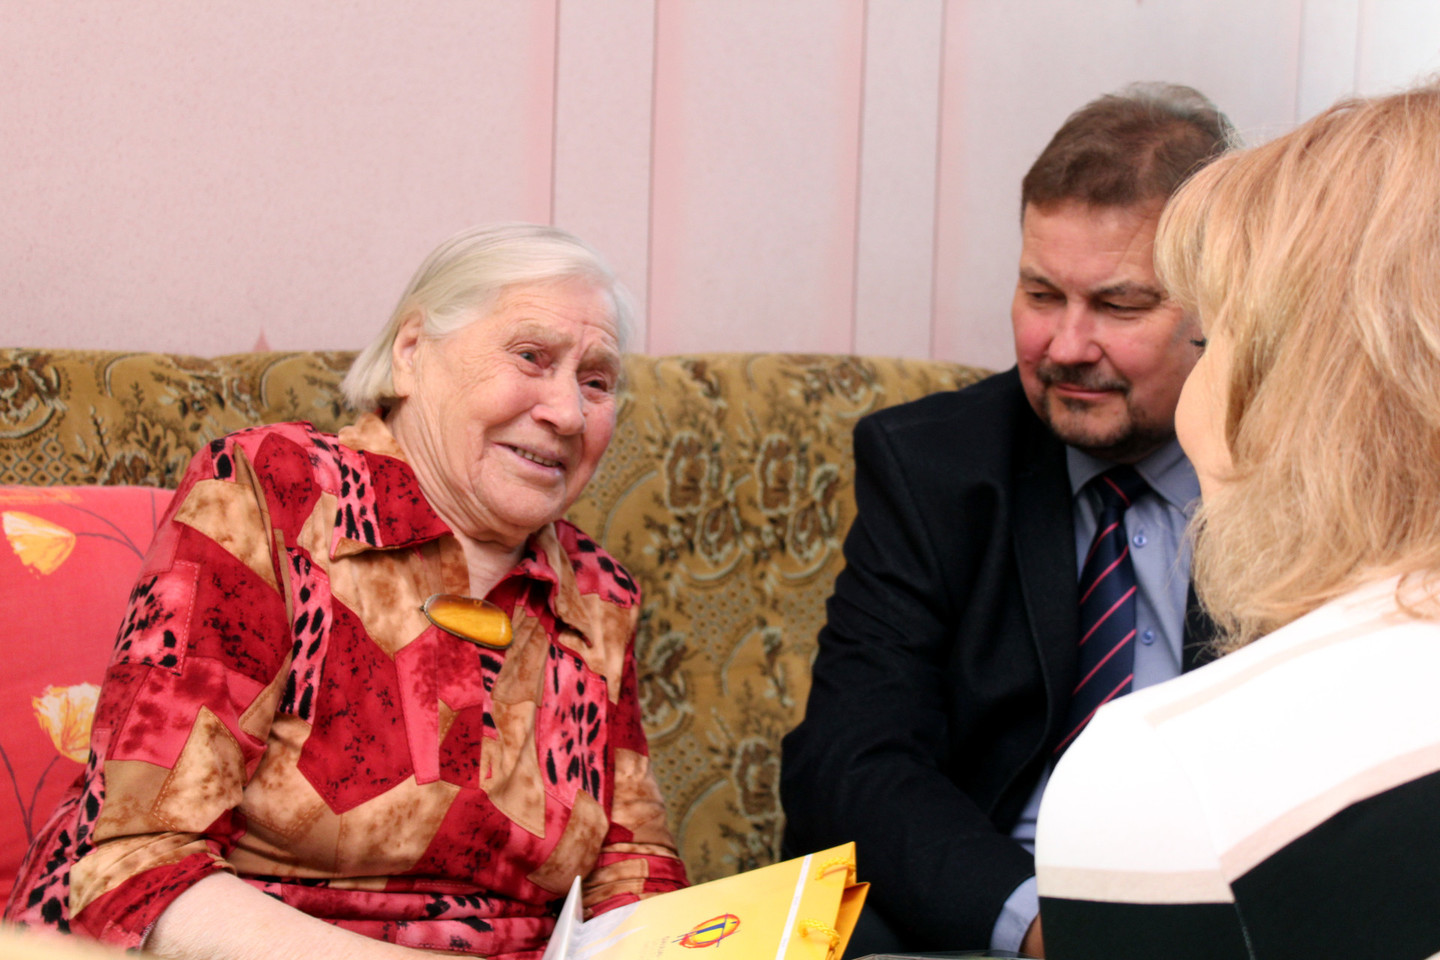 101-ąjį gimtadienį švenčianti šiaulietė M.Macienė spinduliavo gera nuotaika.<br>R.Vitkaus nuotr.